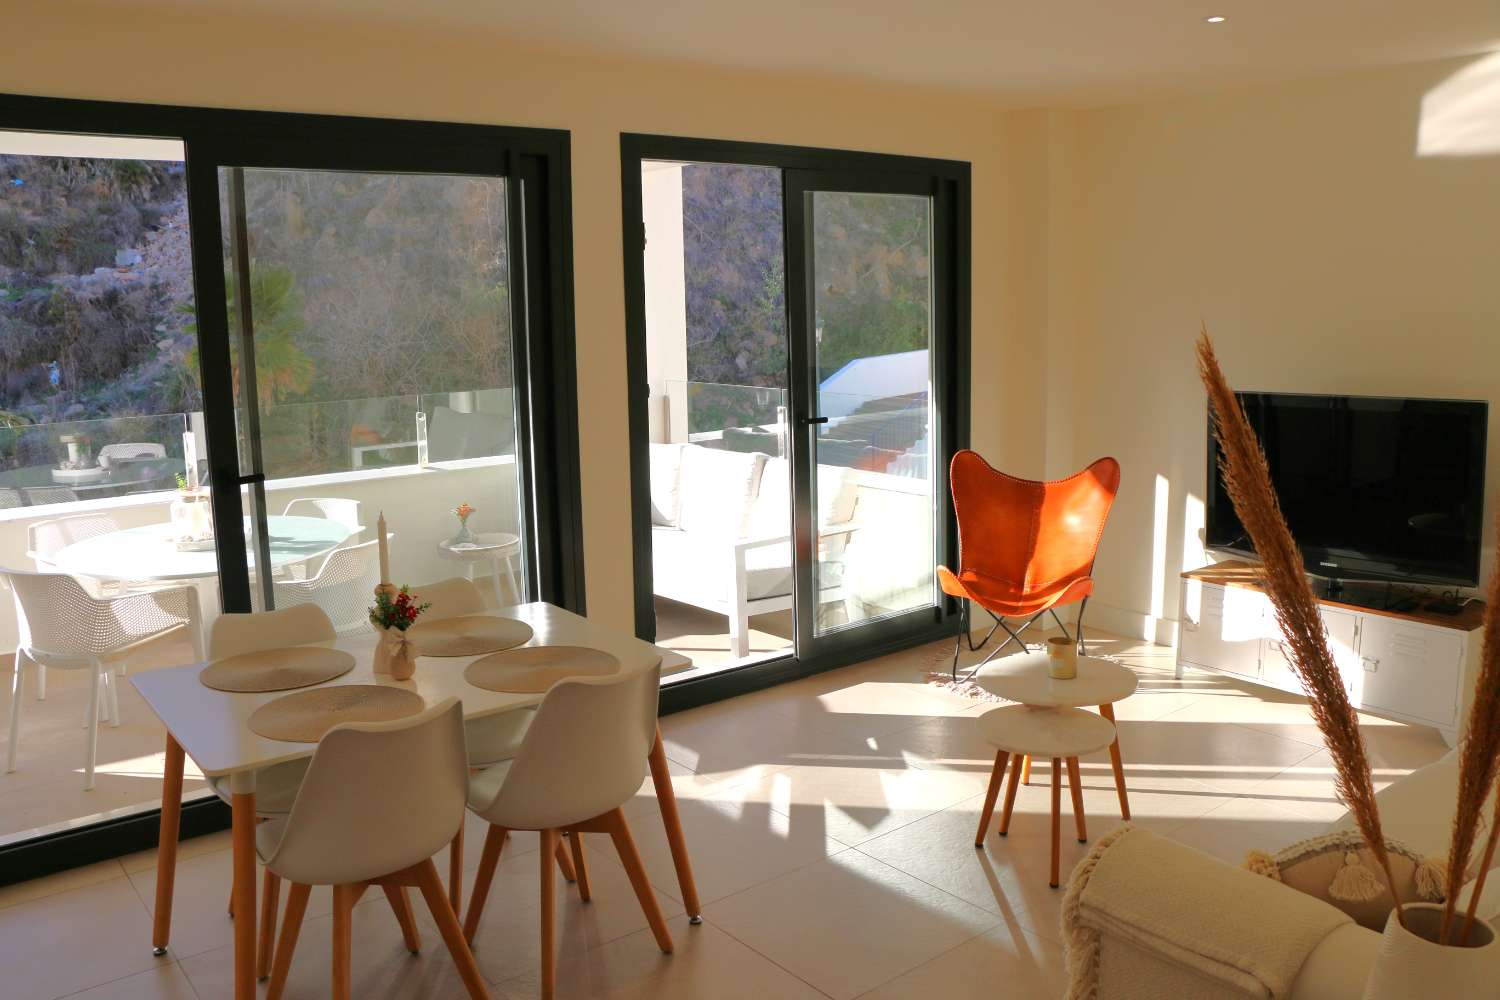 Ny luksuriøst færdig lejlighed i et lille kompleks til en vidunderlig strandferie i Nerja, Sydspanien.